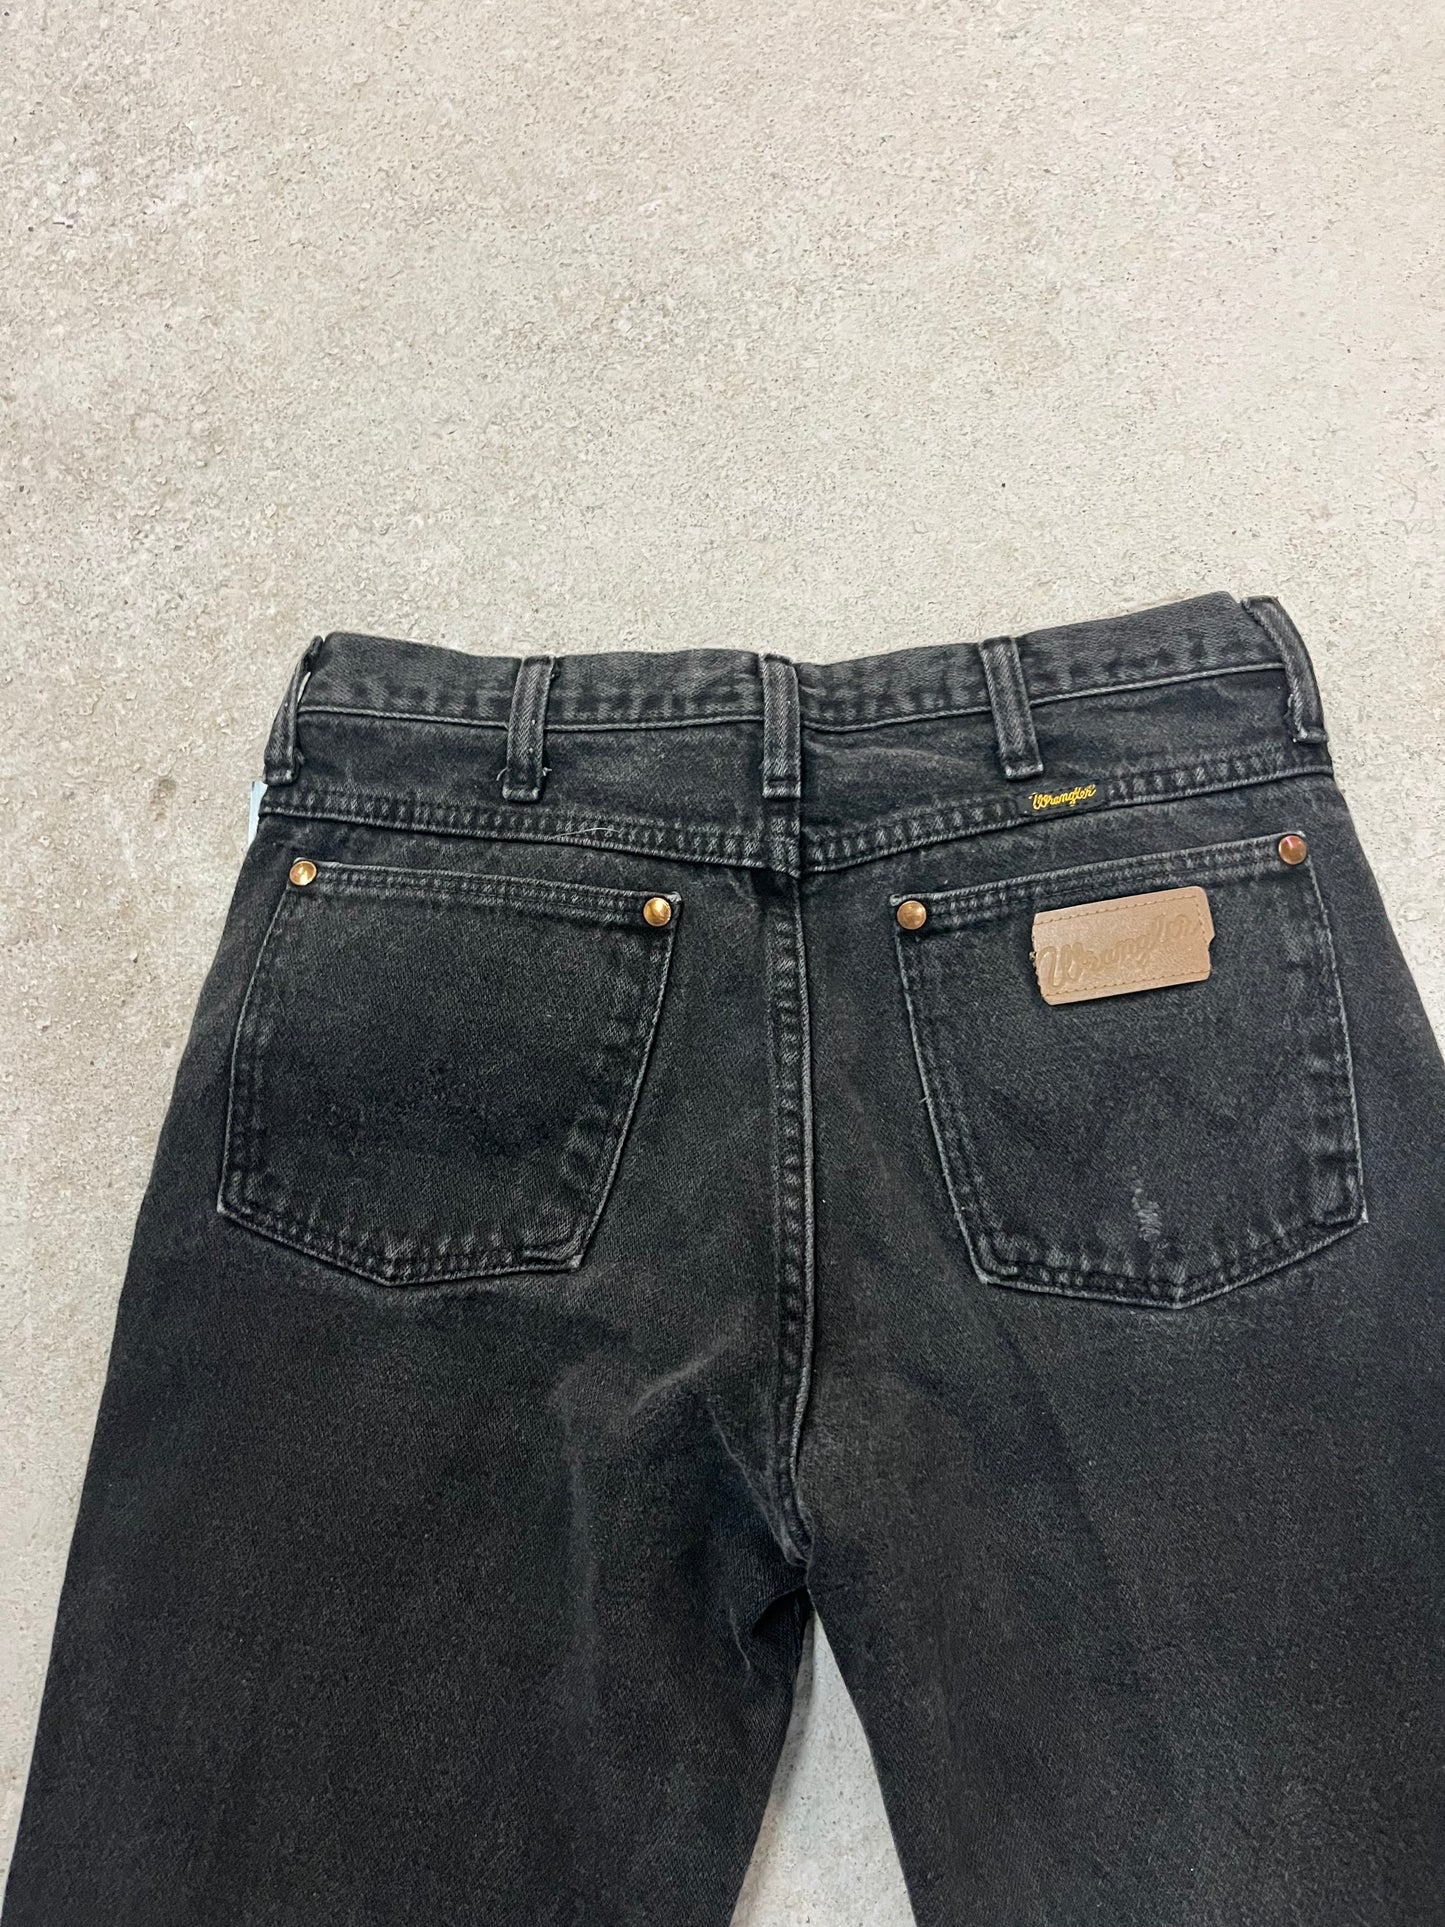 90’s Vintage Wrangler Faded Black Wash Jeans / 29 Waist